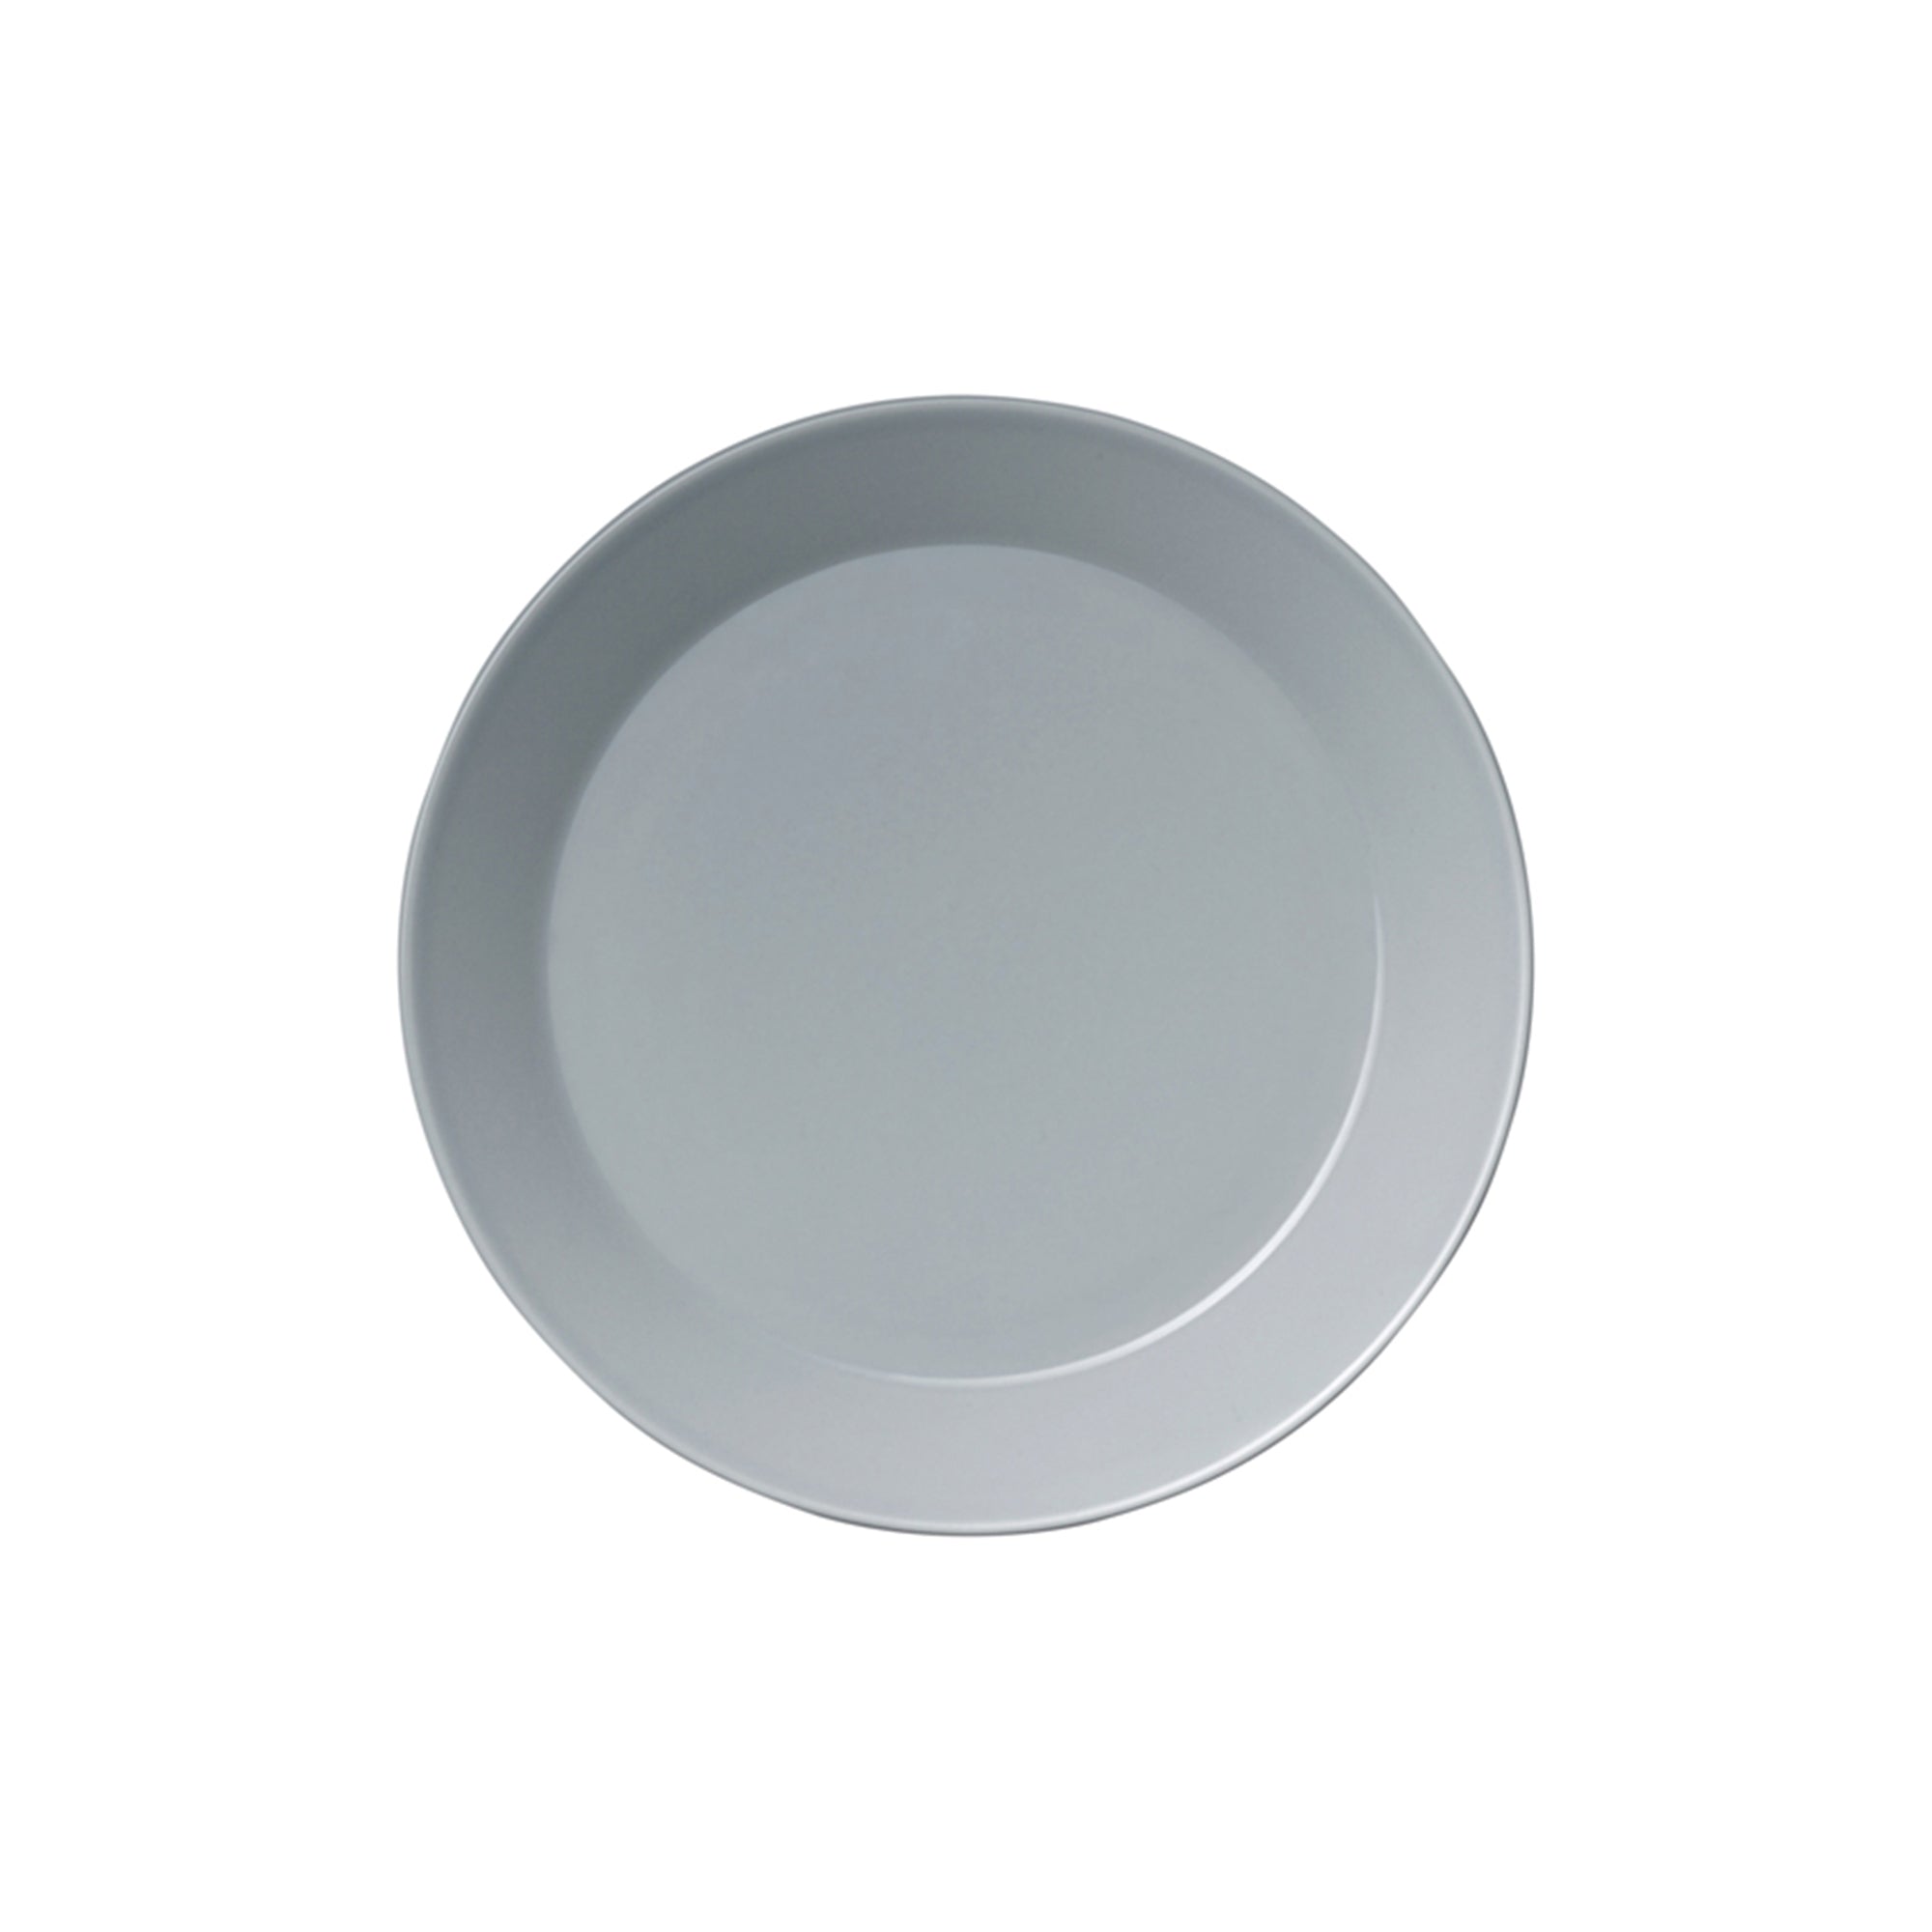 Teema Pearl Grey Salad Plate, 8.25"